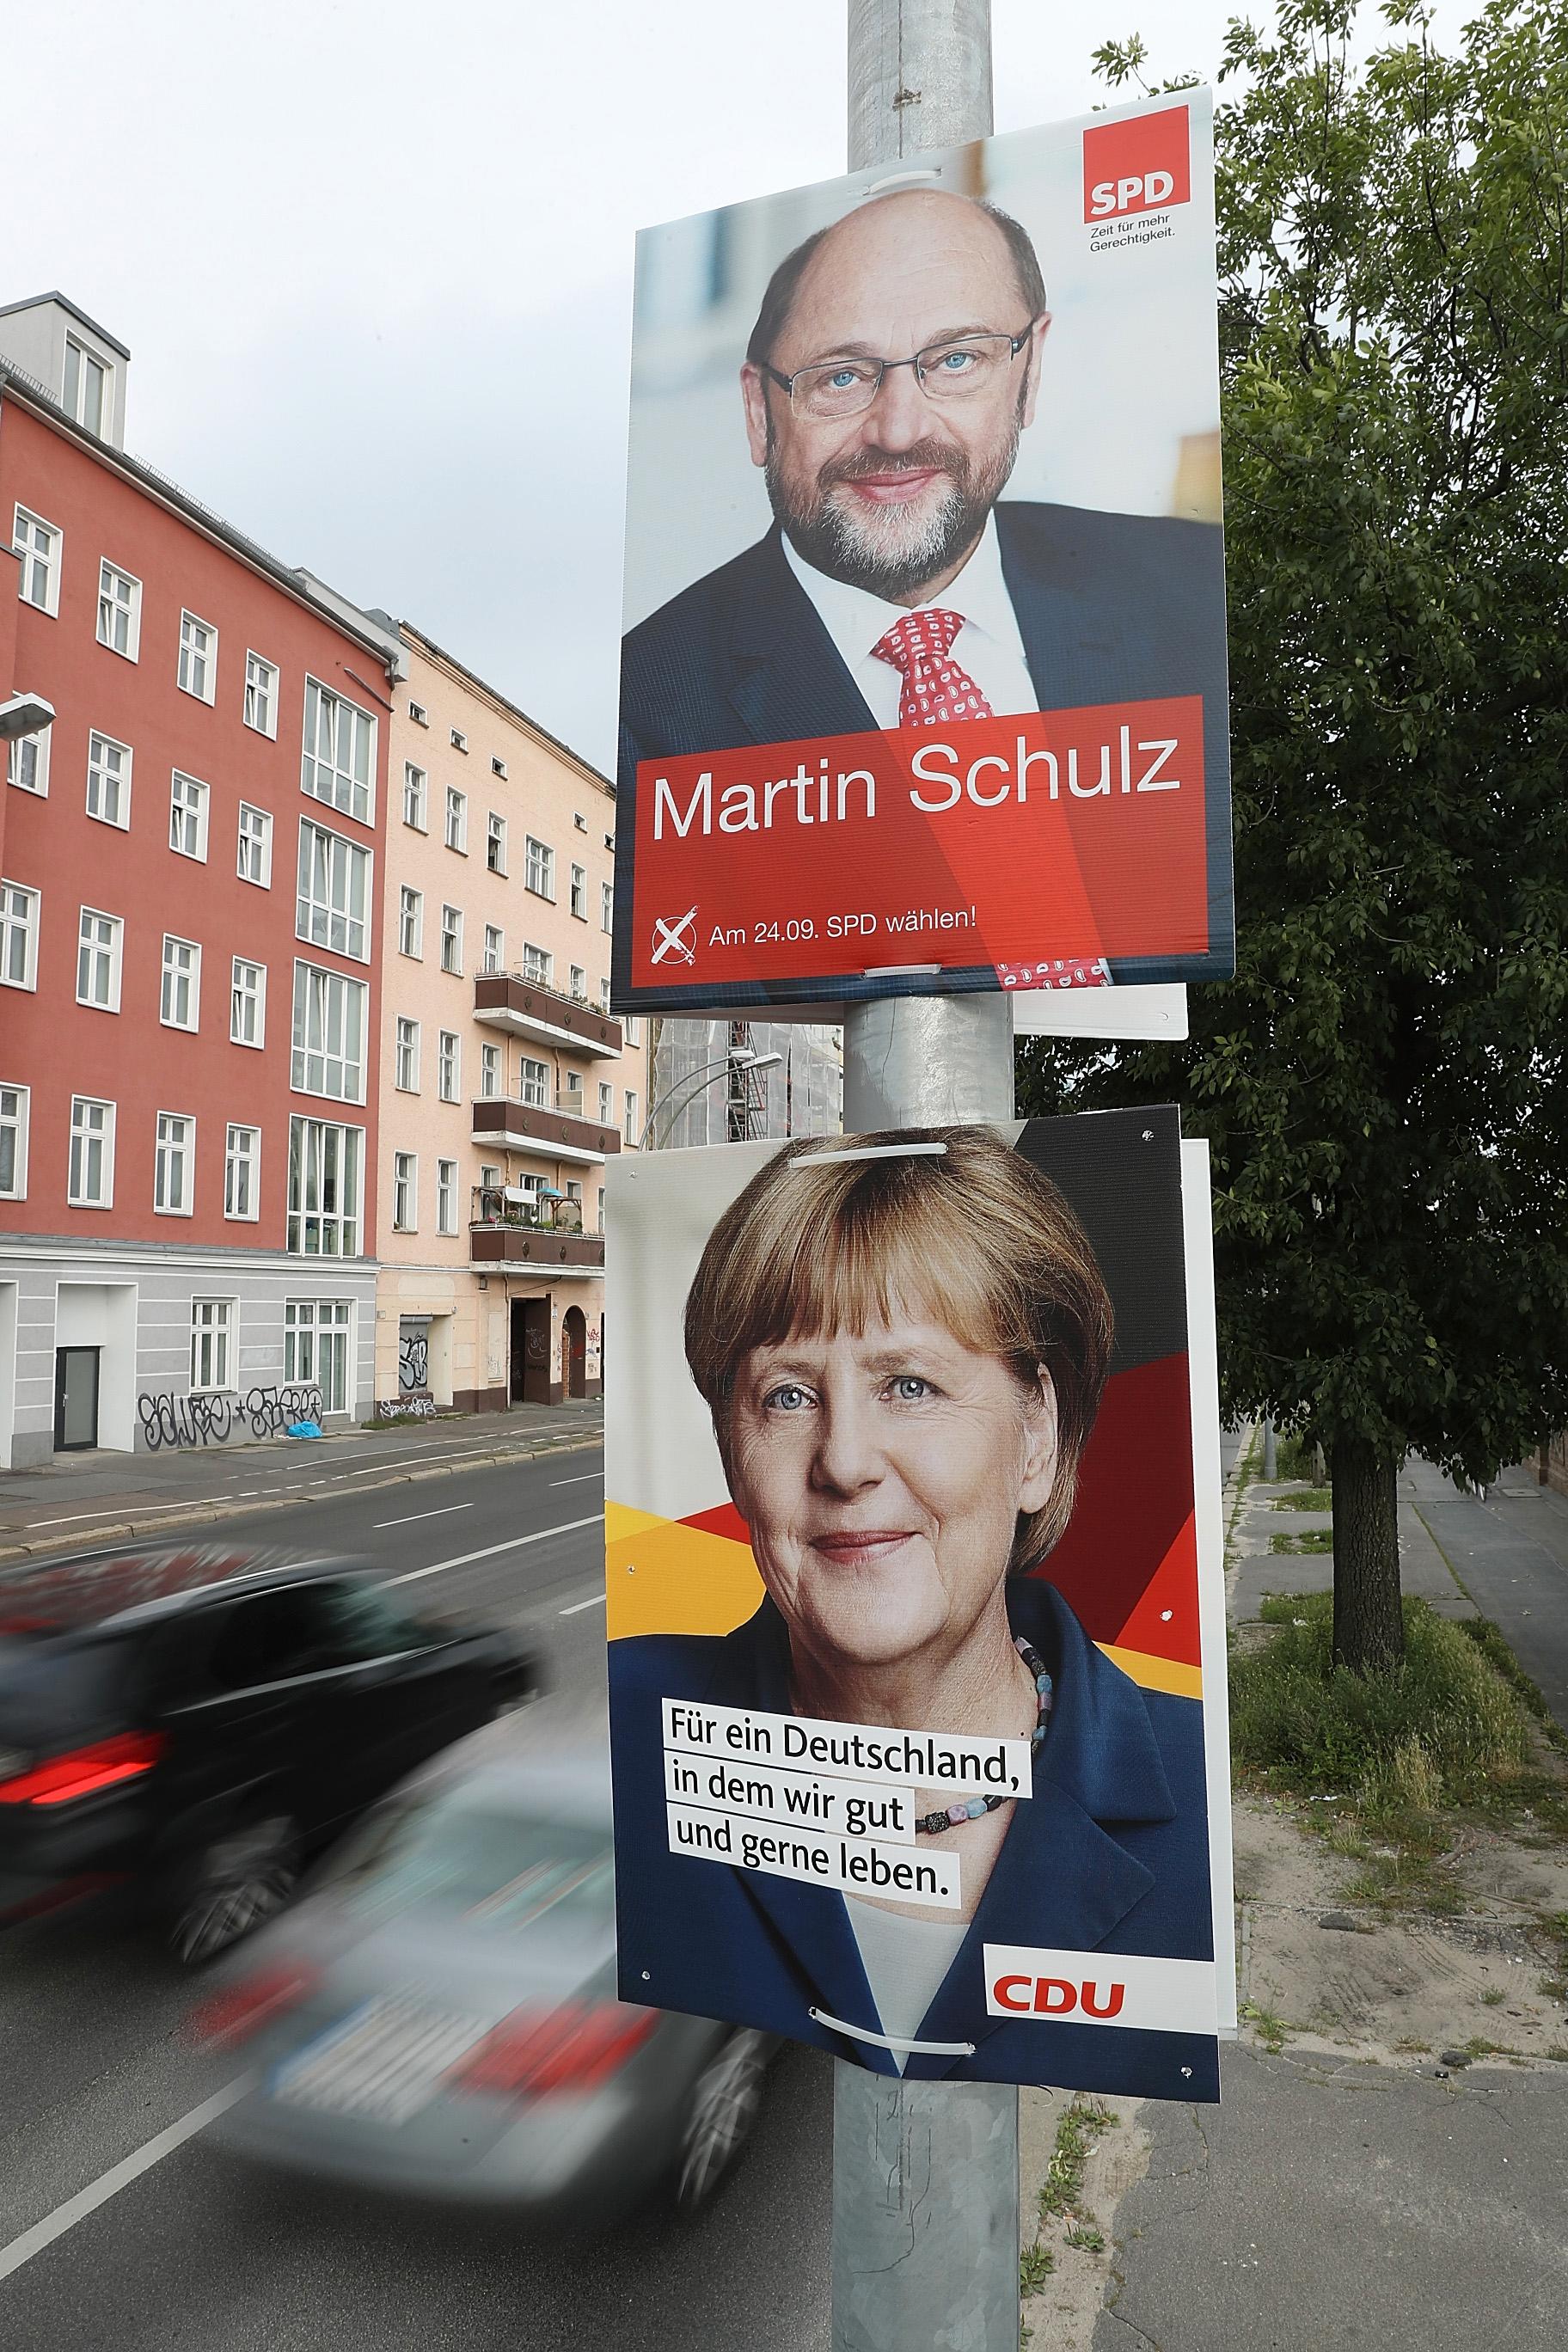 Valet i Tyskland står mellan Martin Schulz (SPD) och Angela Merkel (CDU).